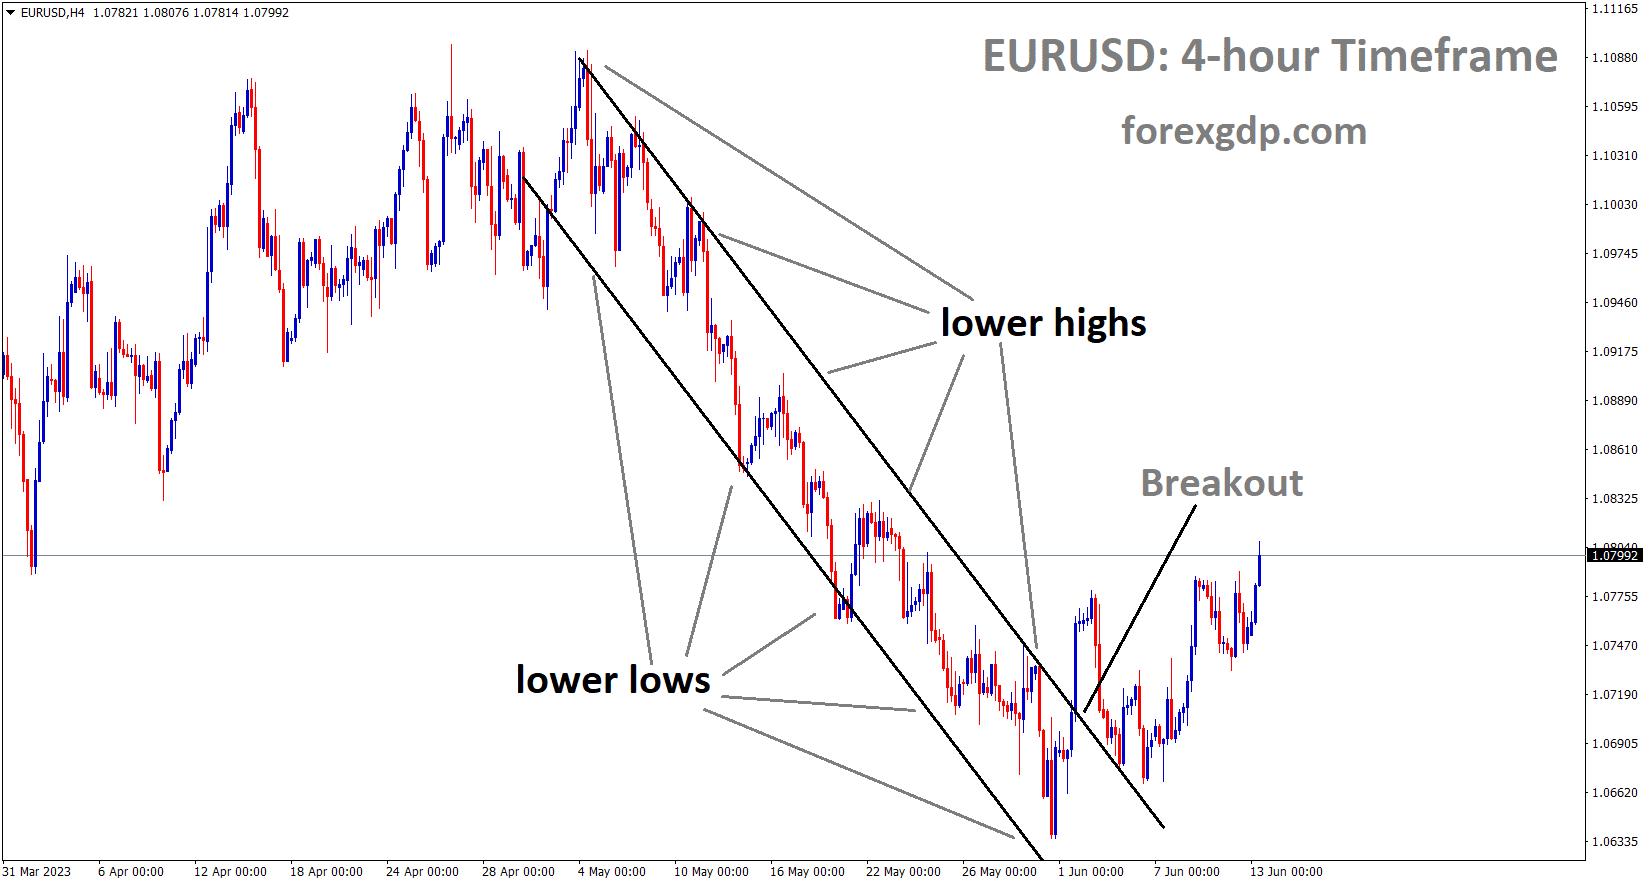 EURUSD has broken the Descending channel in upside 1